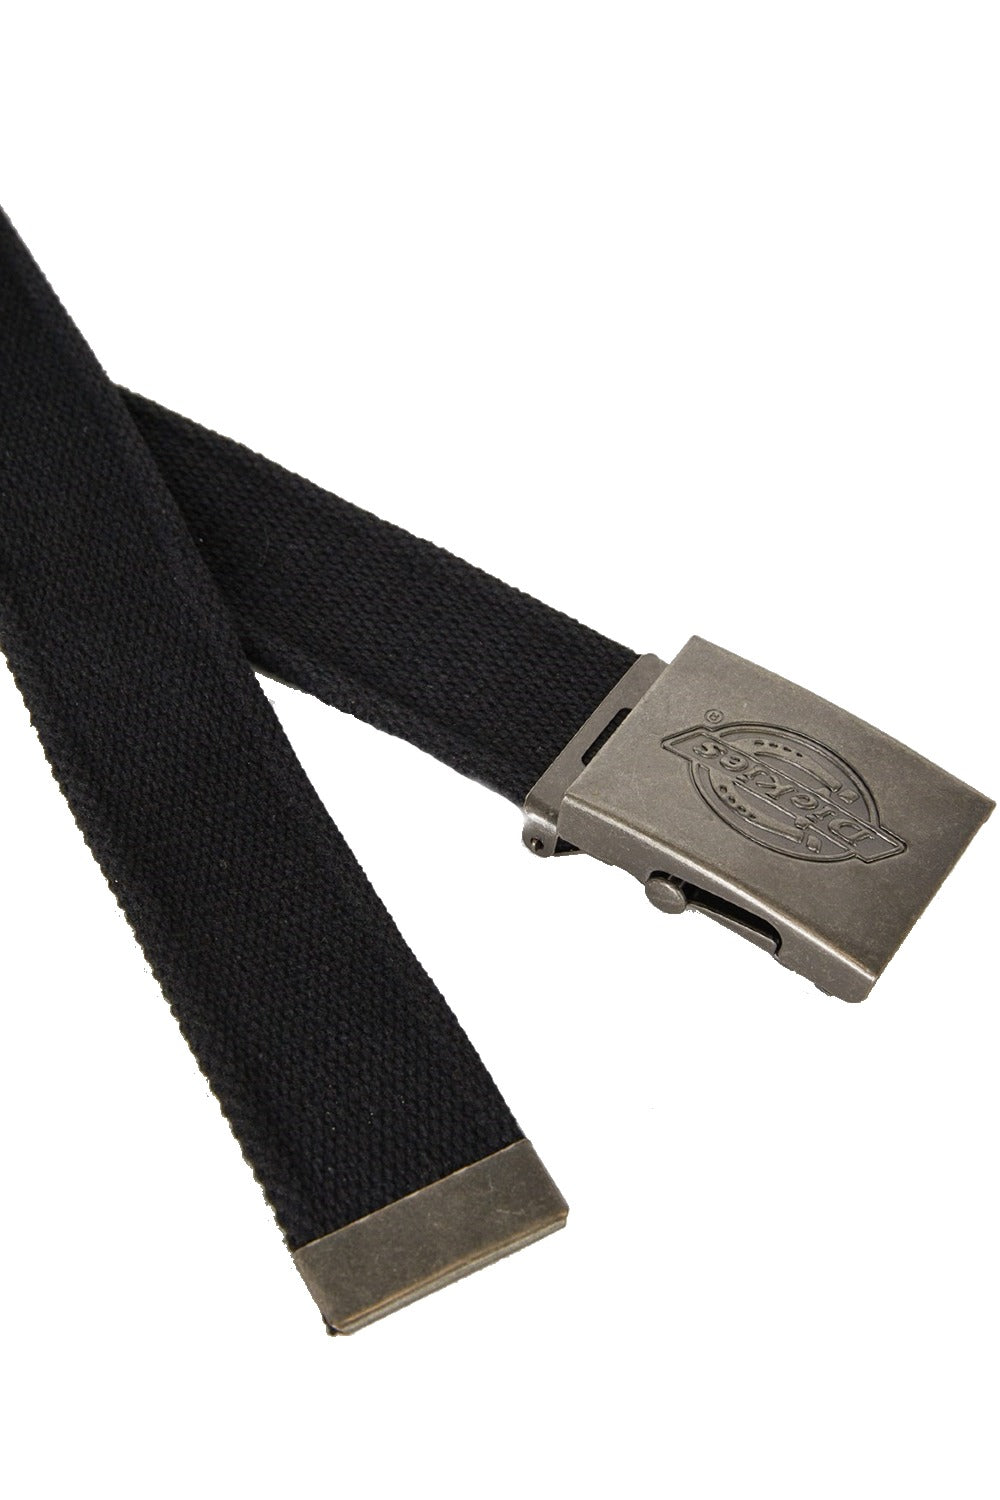 Dickies Canvas Belt in Black